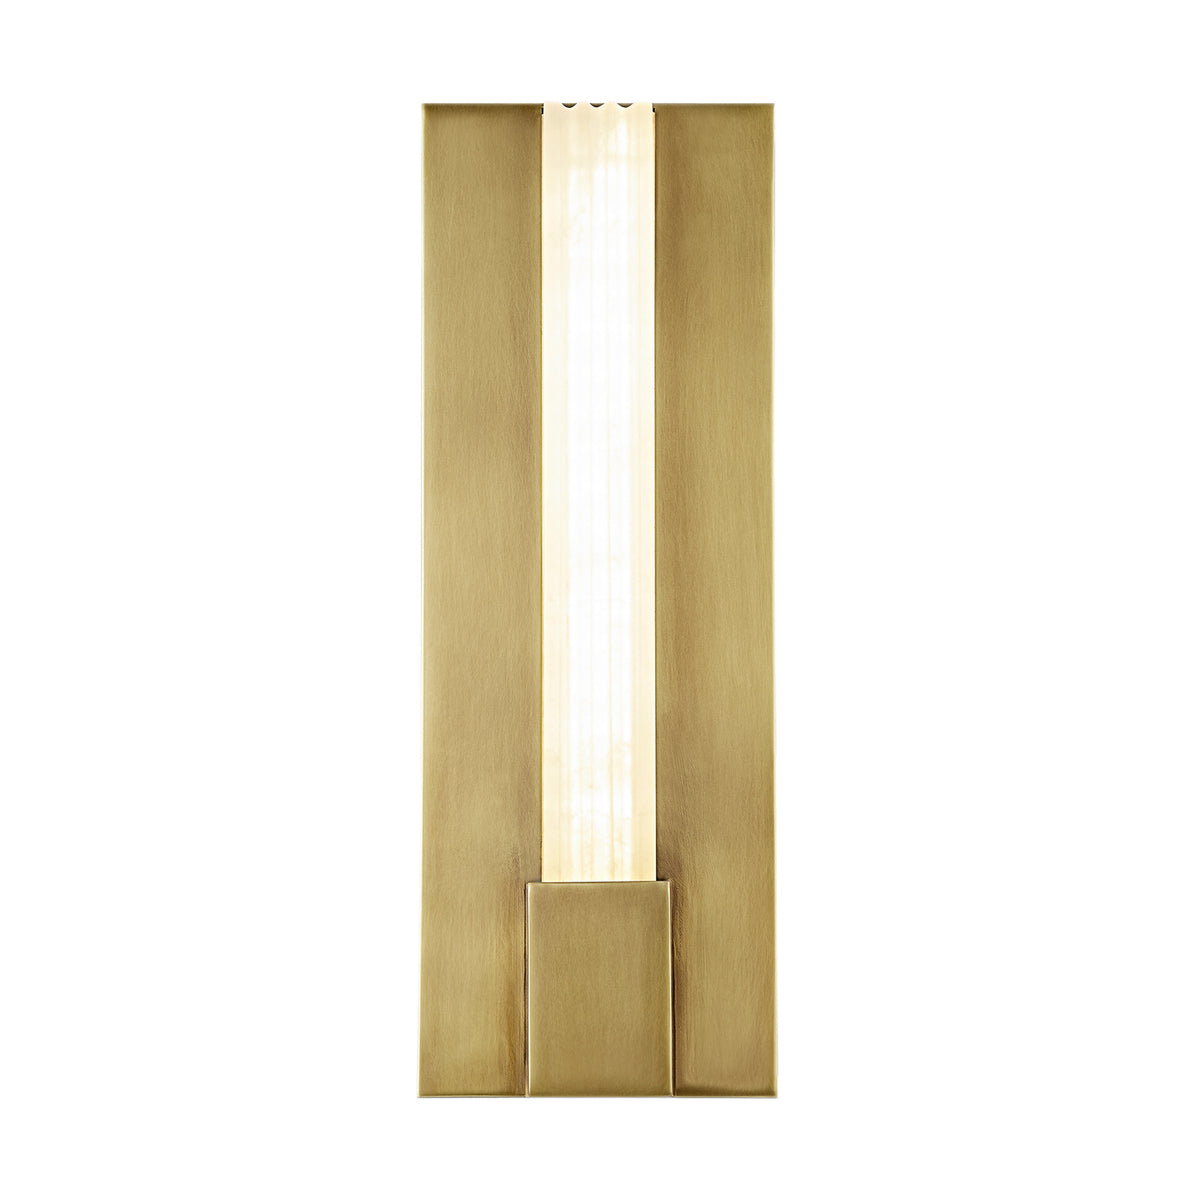 Alora Lighting - WV322114VBAR - LED Vanity - Kismet - Polished Nickel/Alabaster|Urban Bronze/Alabaster|Vintage Brass/Alabaster